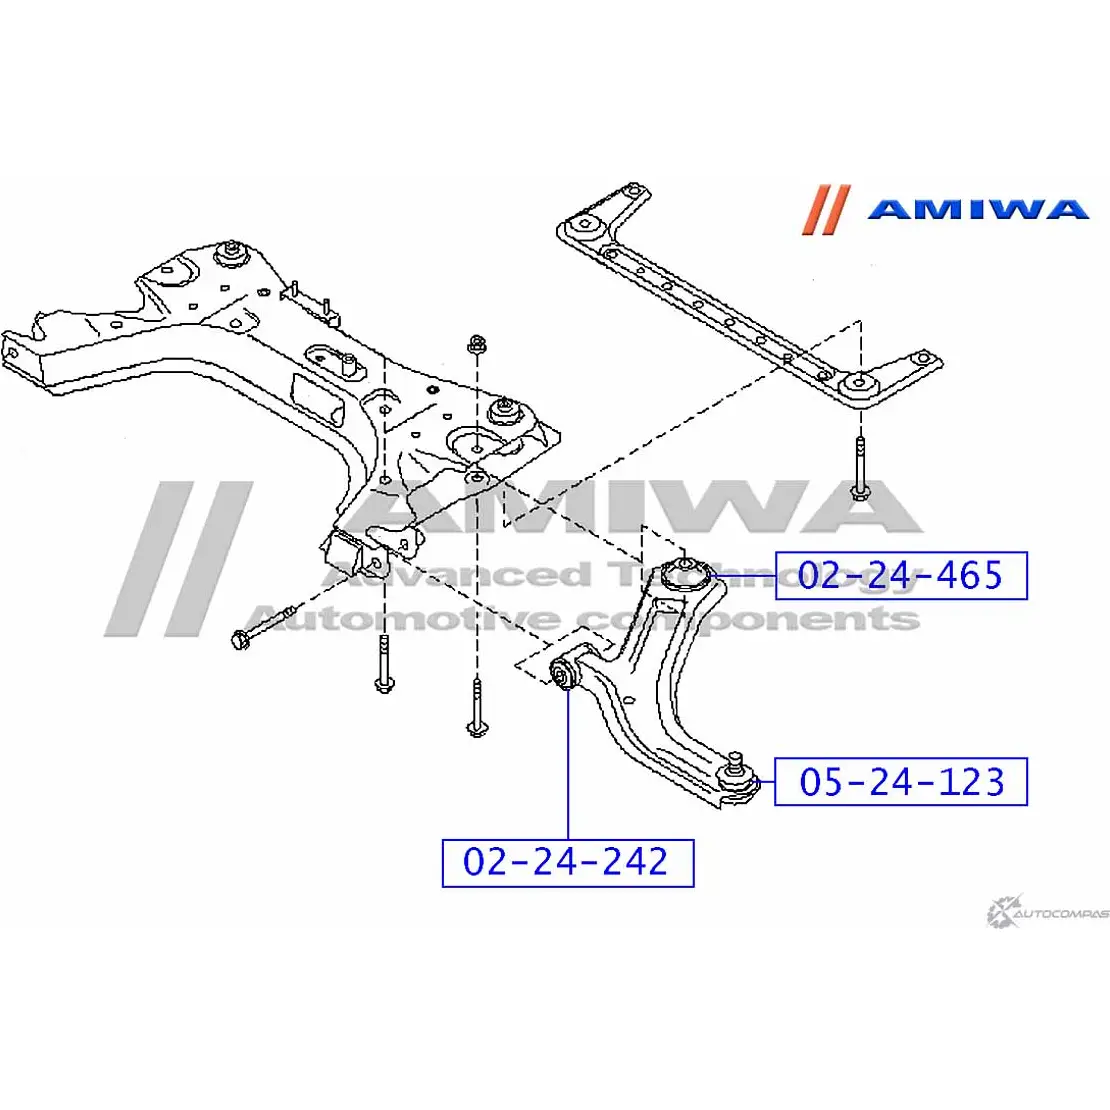 Сайленблок задний переднего рычага AMIWA X TFJKL6 02-24-465 1422492274 L29BTMY изображение 1